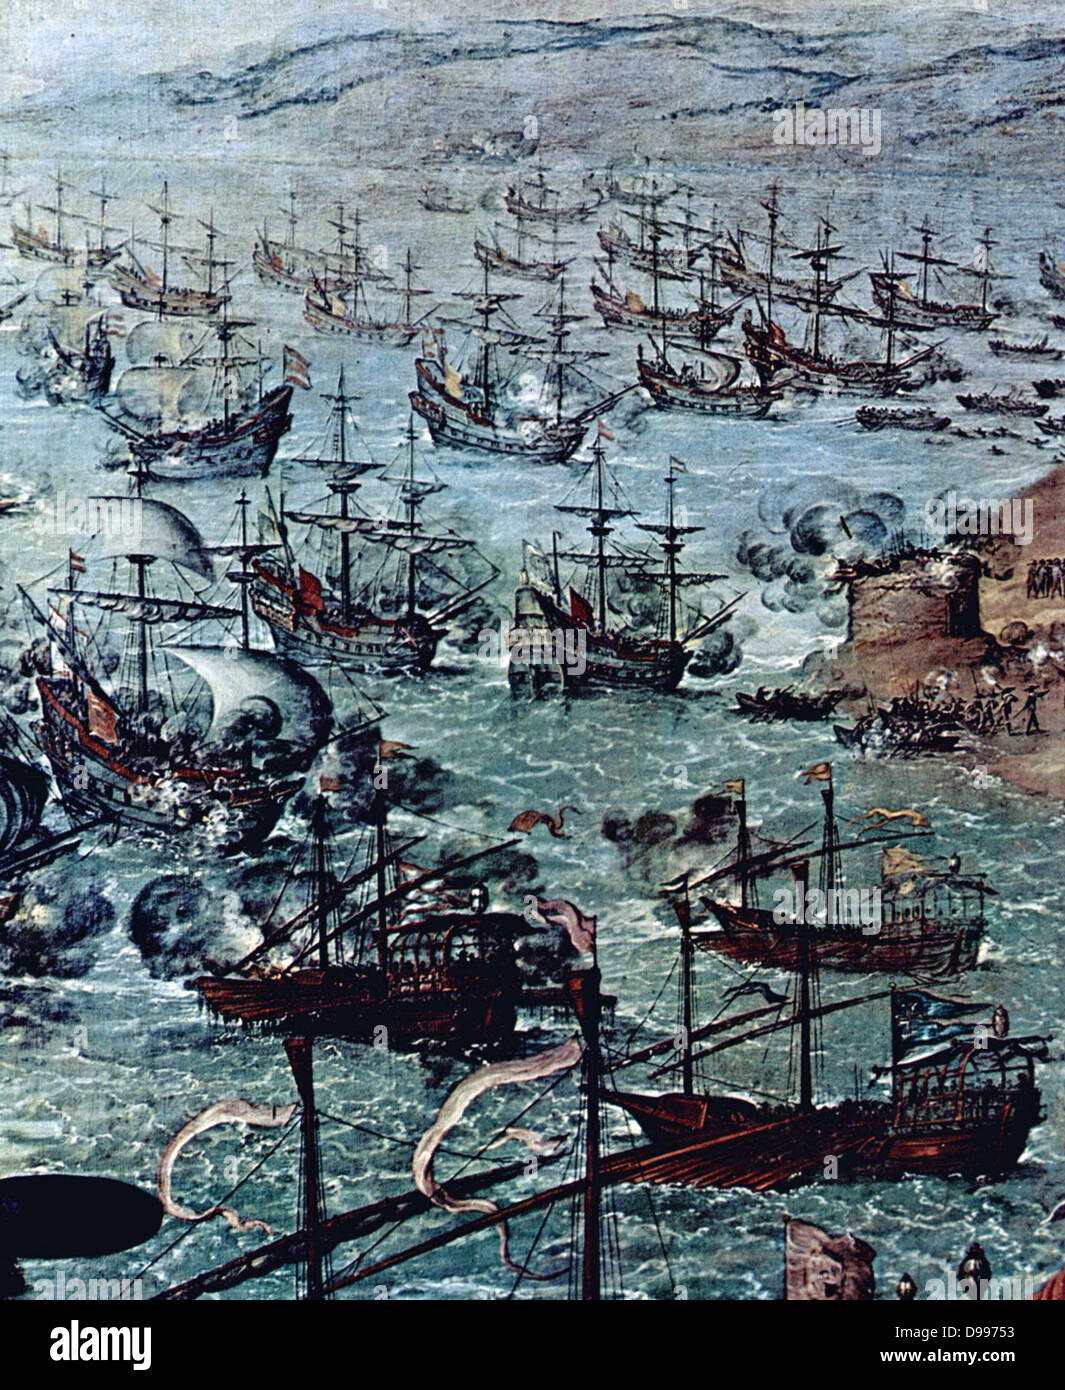 En avril 1587 un raid par l'anglais Sir Francis Drake a occupé le port de Cadix pendant trois jours. L'attaque a retardé le voile de l'Armada espagnole par un an. Zurbarán, Francisco de 'l'attaque de Cádiz", (détail) 1634 Museo del Prado Banque D'Images